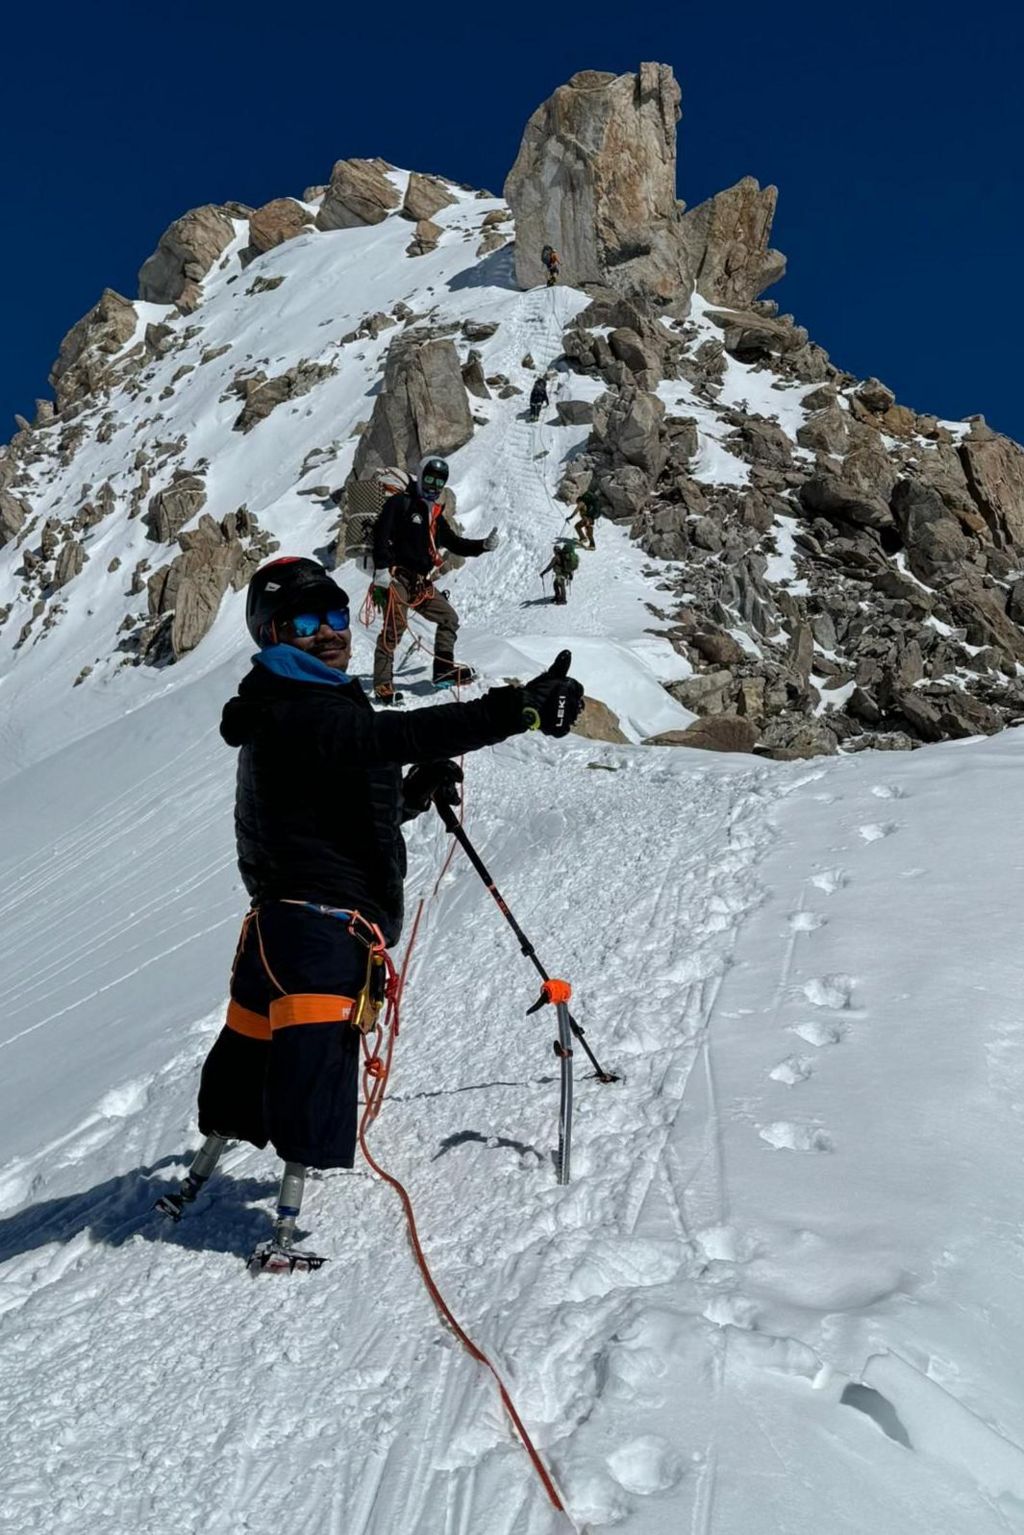 Hari Budha Magar climbing Denali with support team